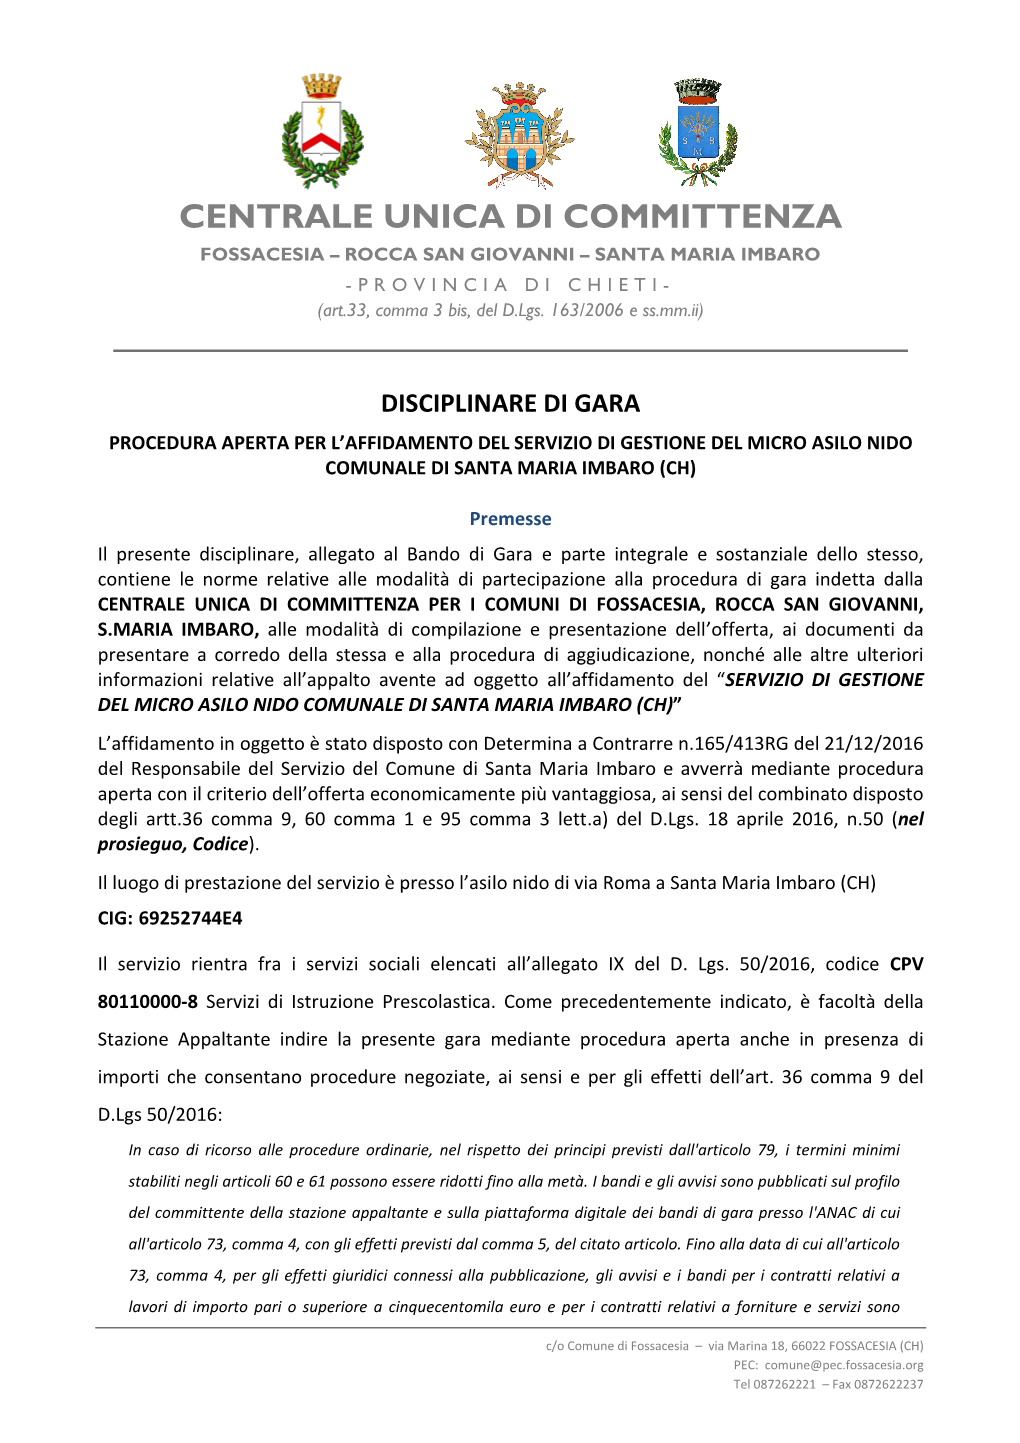 CENTRALE UNICA DI COMMITTENZA FOSSACESIA – ROCCA SAN GIOVANNI – SANTA MARIA IMBARO -PROVINCIA DI CHIETI- (Art.33, Comma 3 Bis, Del D.Lgs